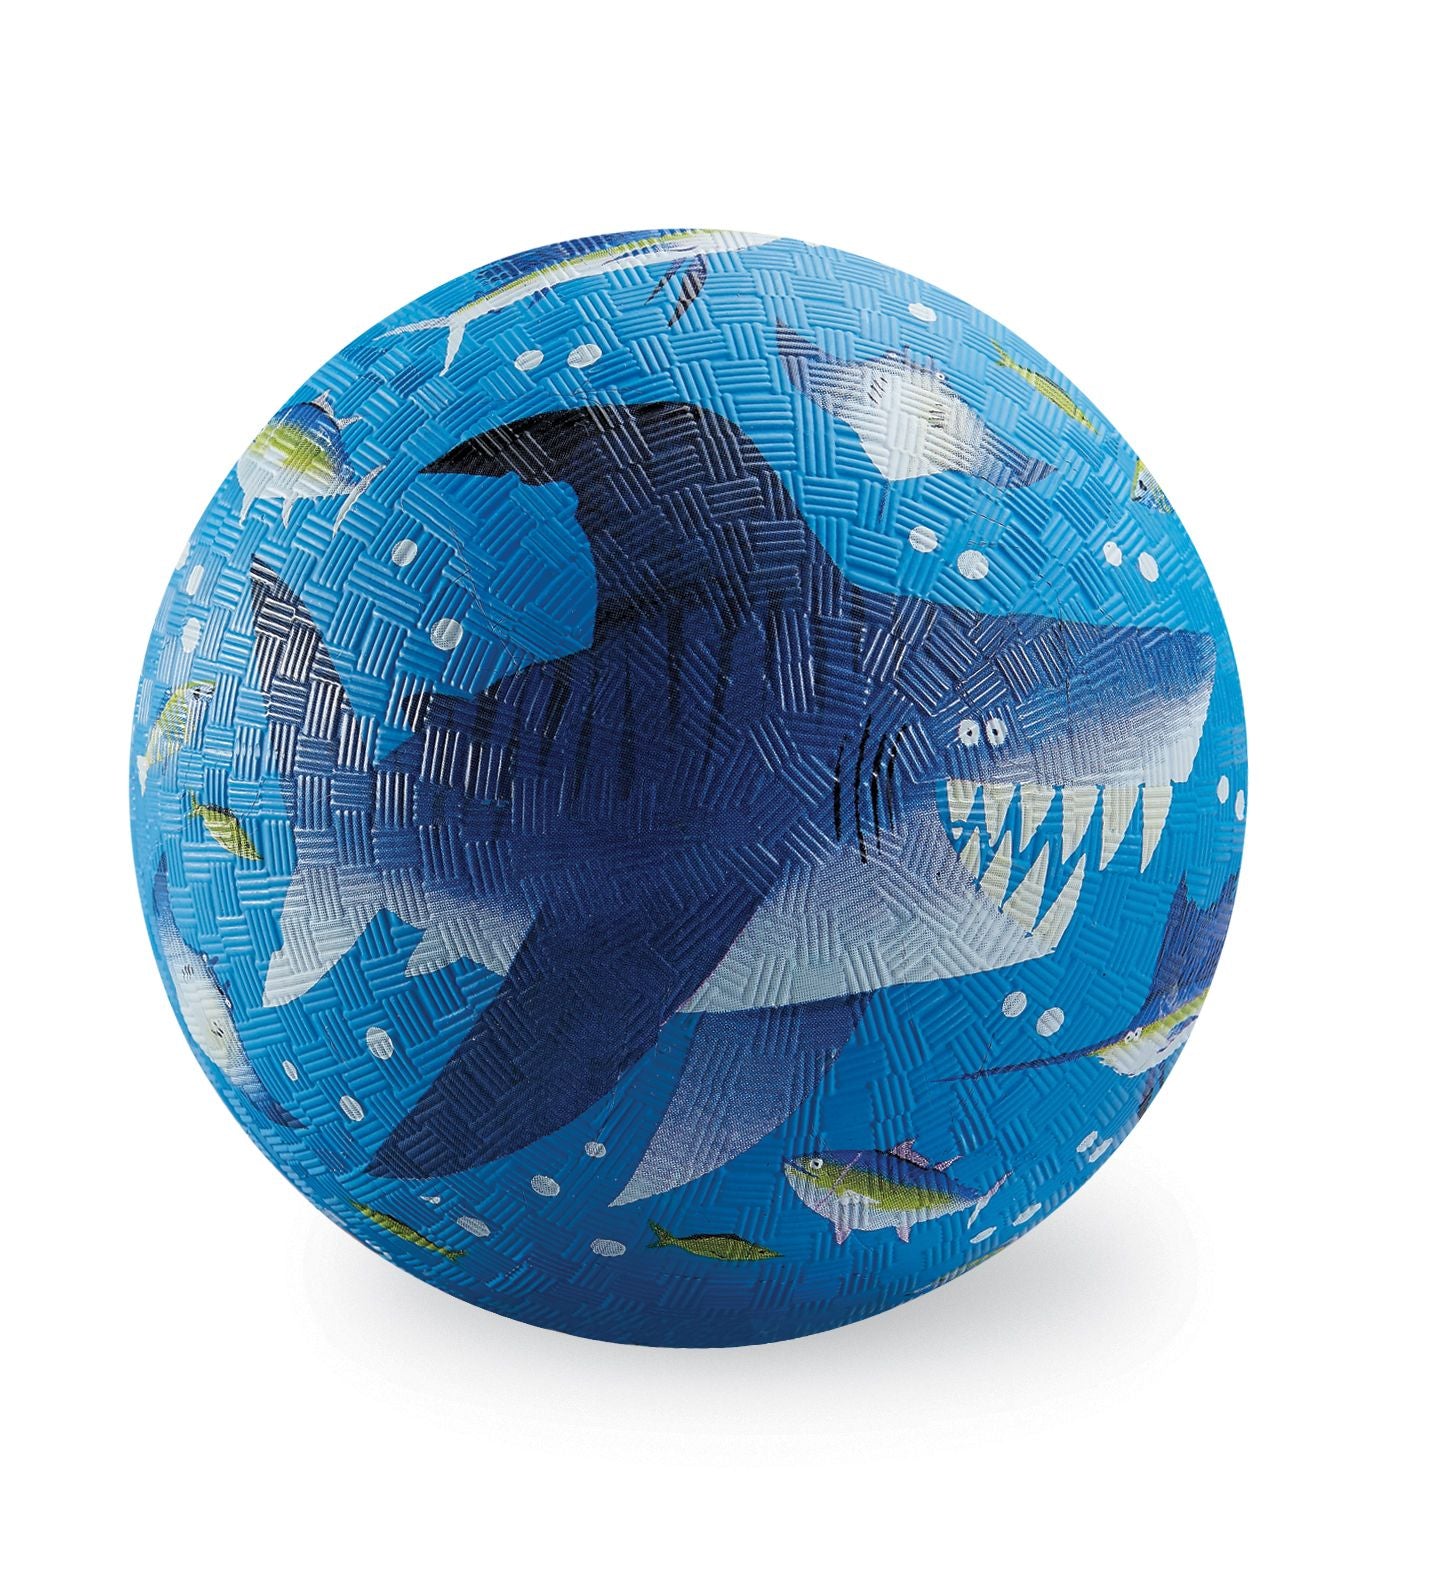 7" Playground Ball - Shark Reef